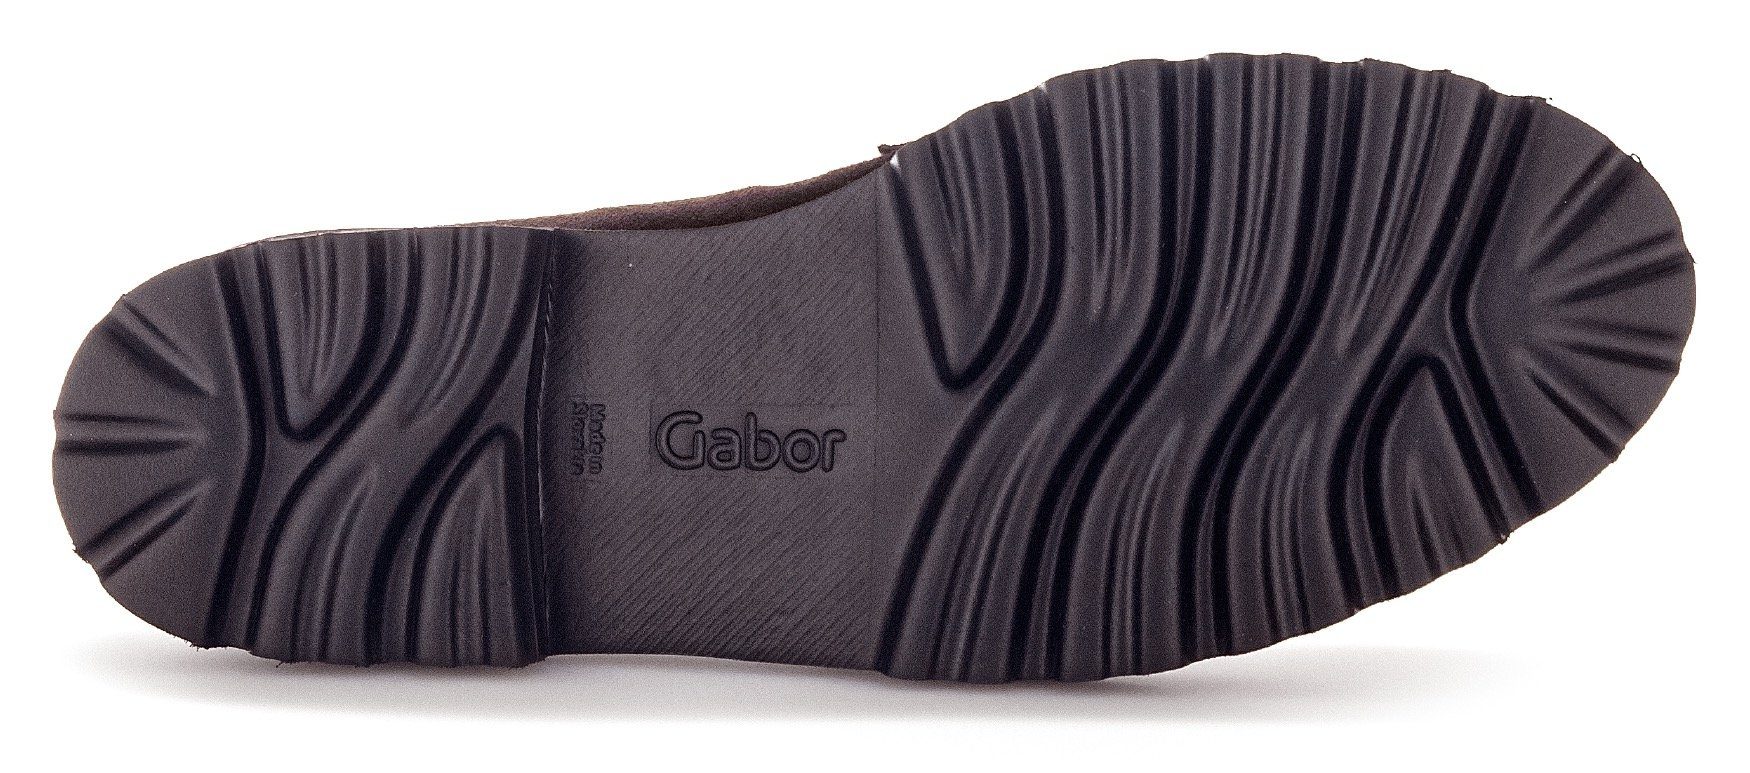 Best dunkelbraun-schwarz Slipper Fitting-Ausstattung Gabor mit